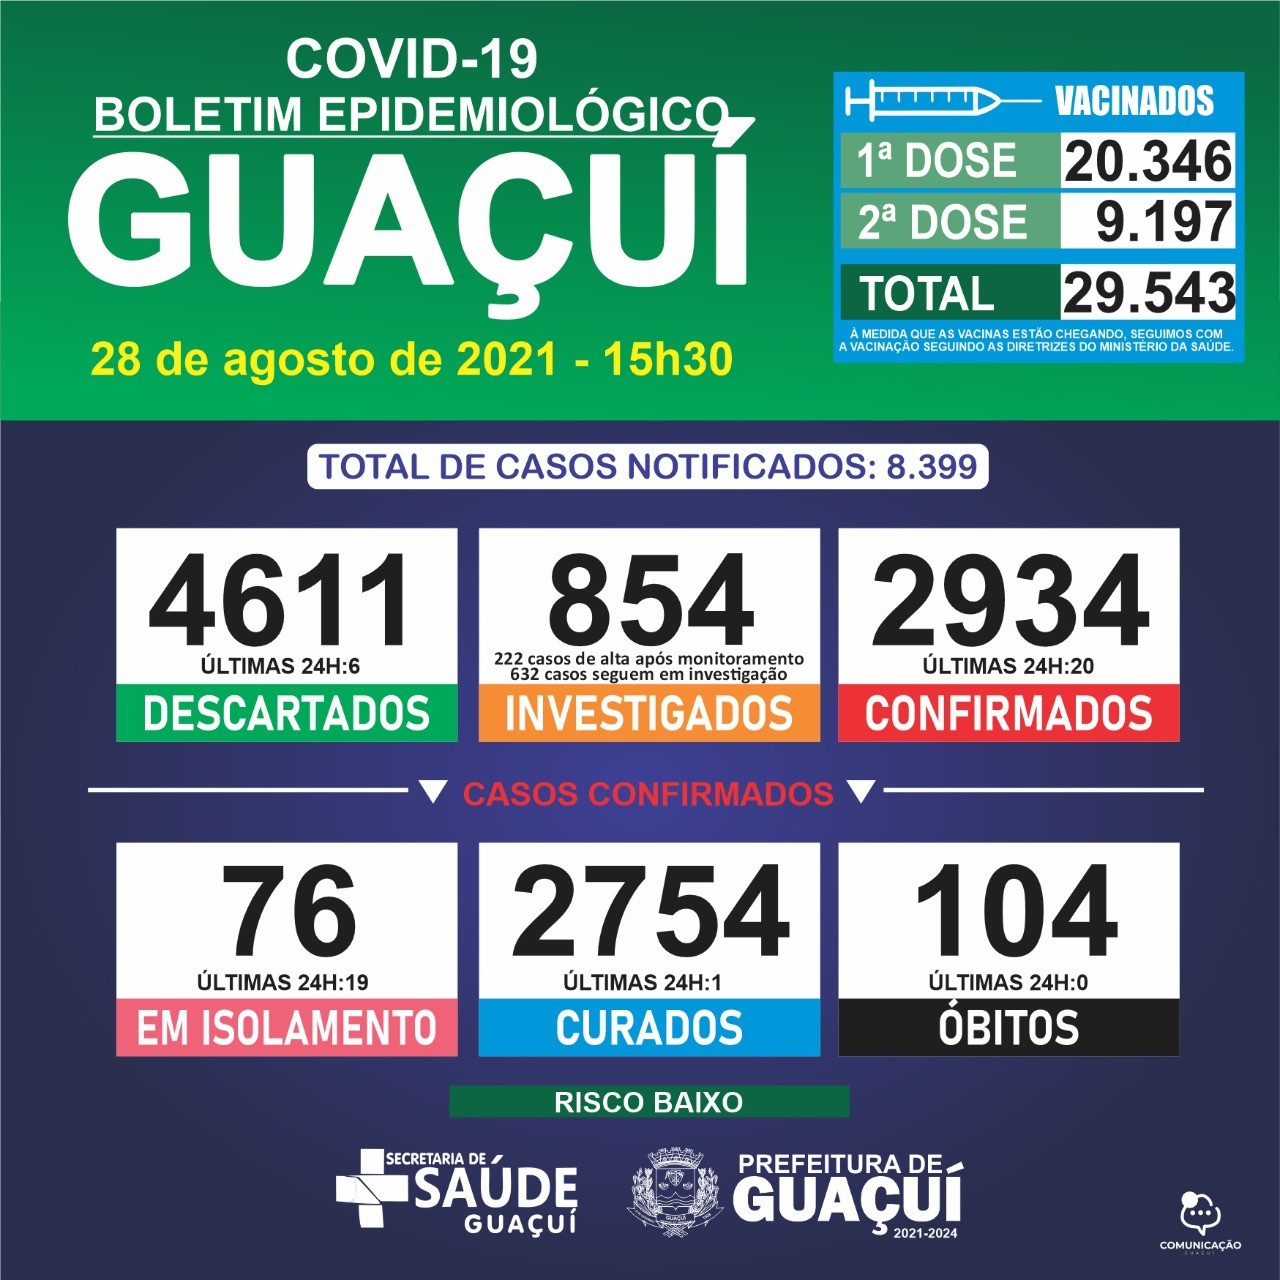 Boletim Epidemiológico 28/08/21: Guaçuí registra 20 casos confirmados e 1 curado nas últimas 24 horas